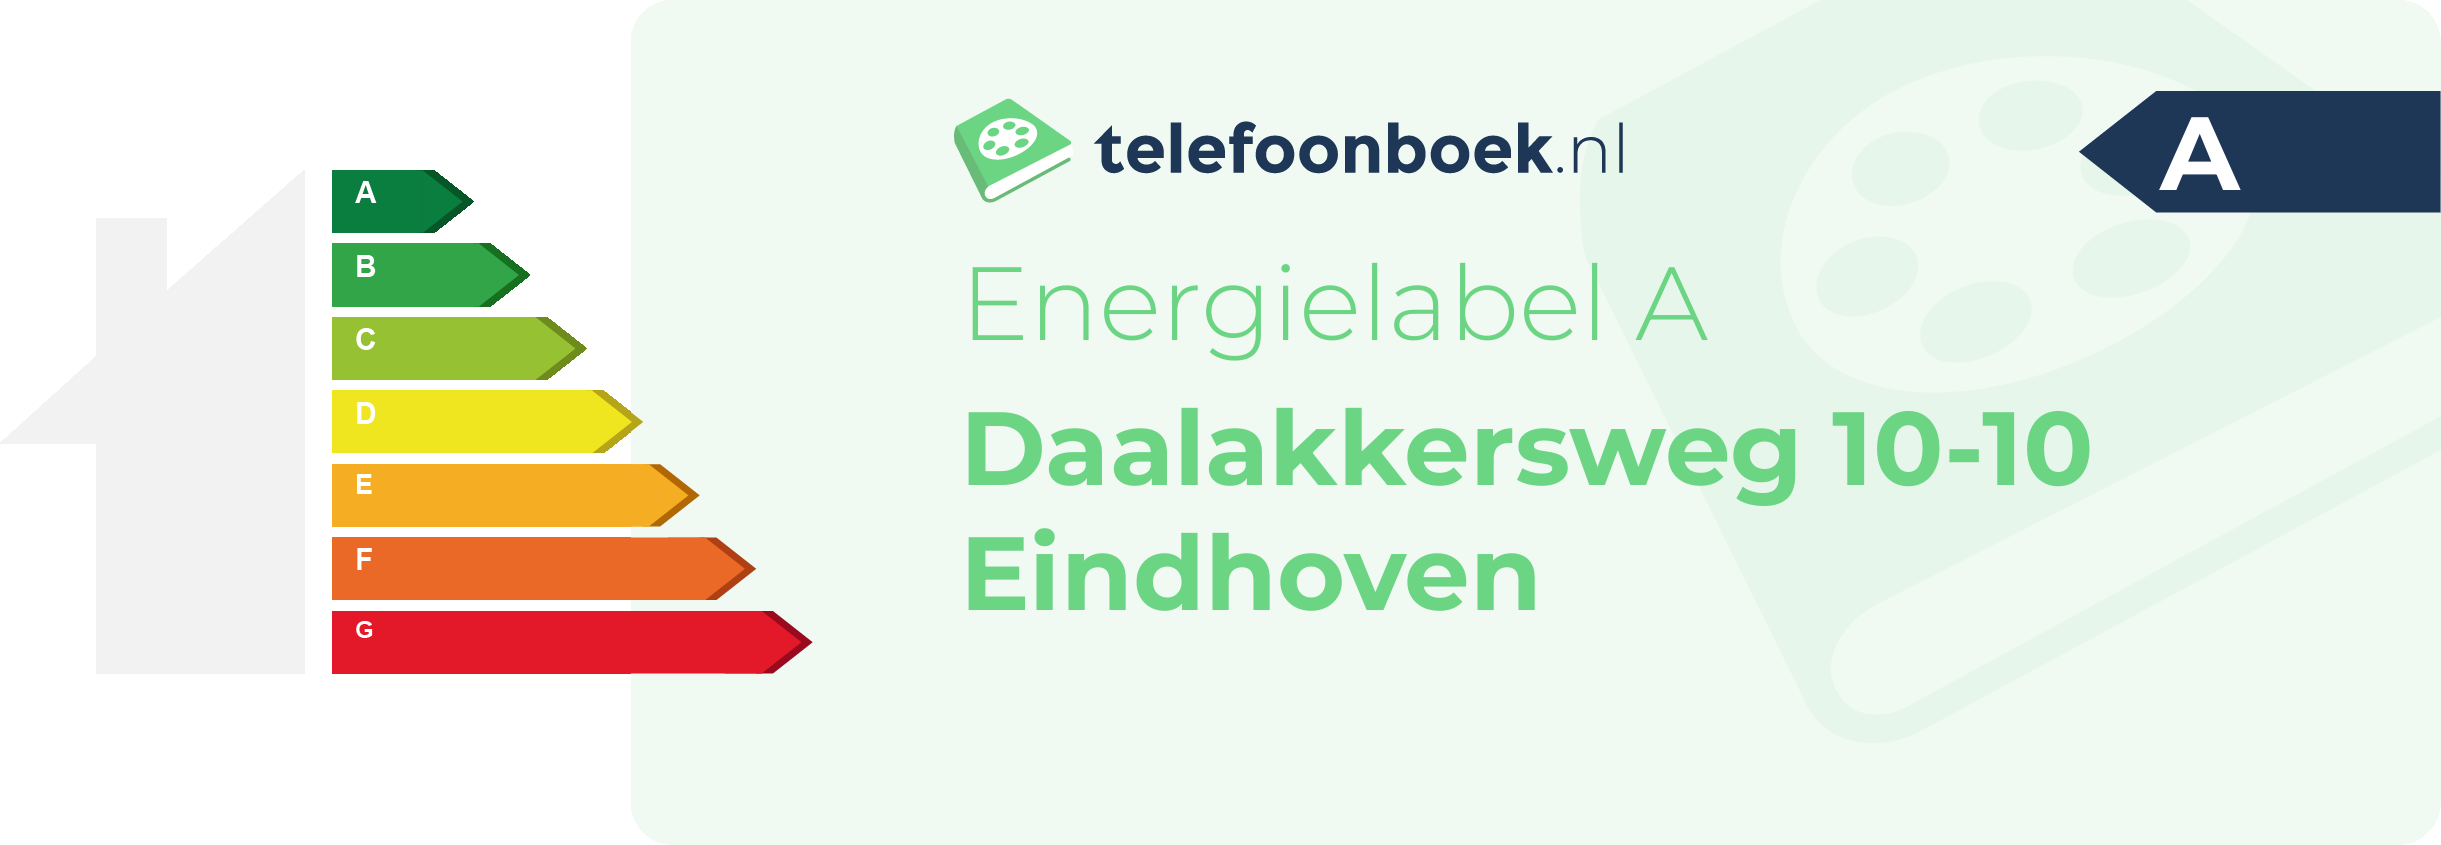 Energielabel Daalakkersweg 10-10 Eindhoven